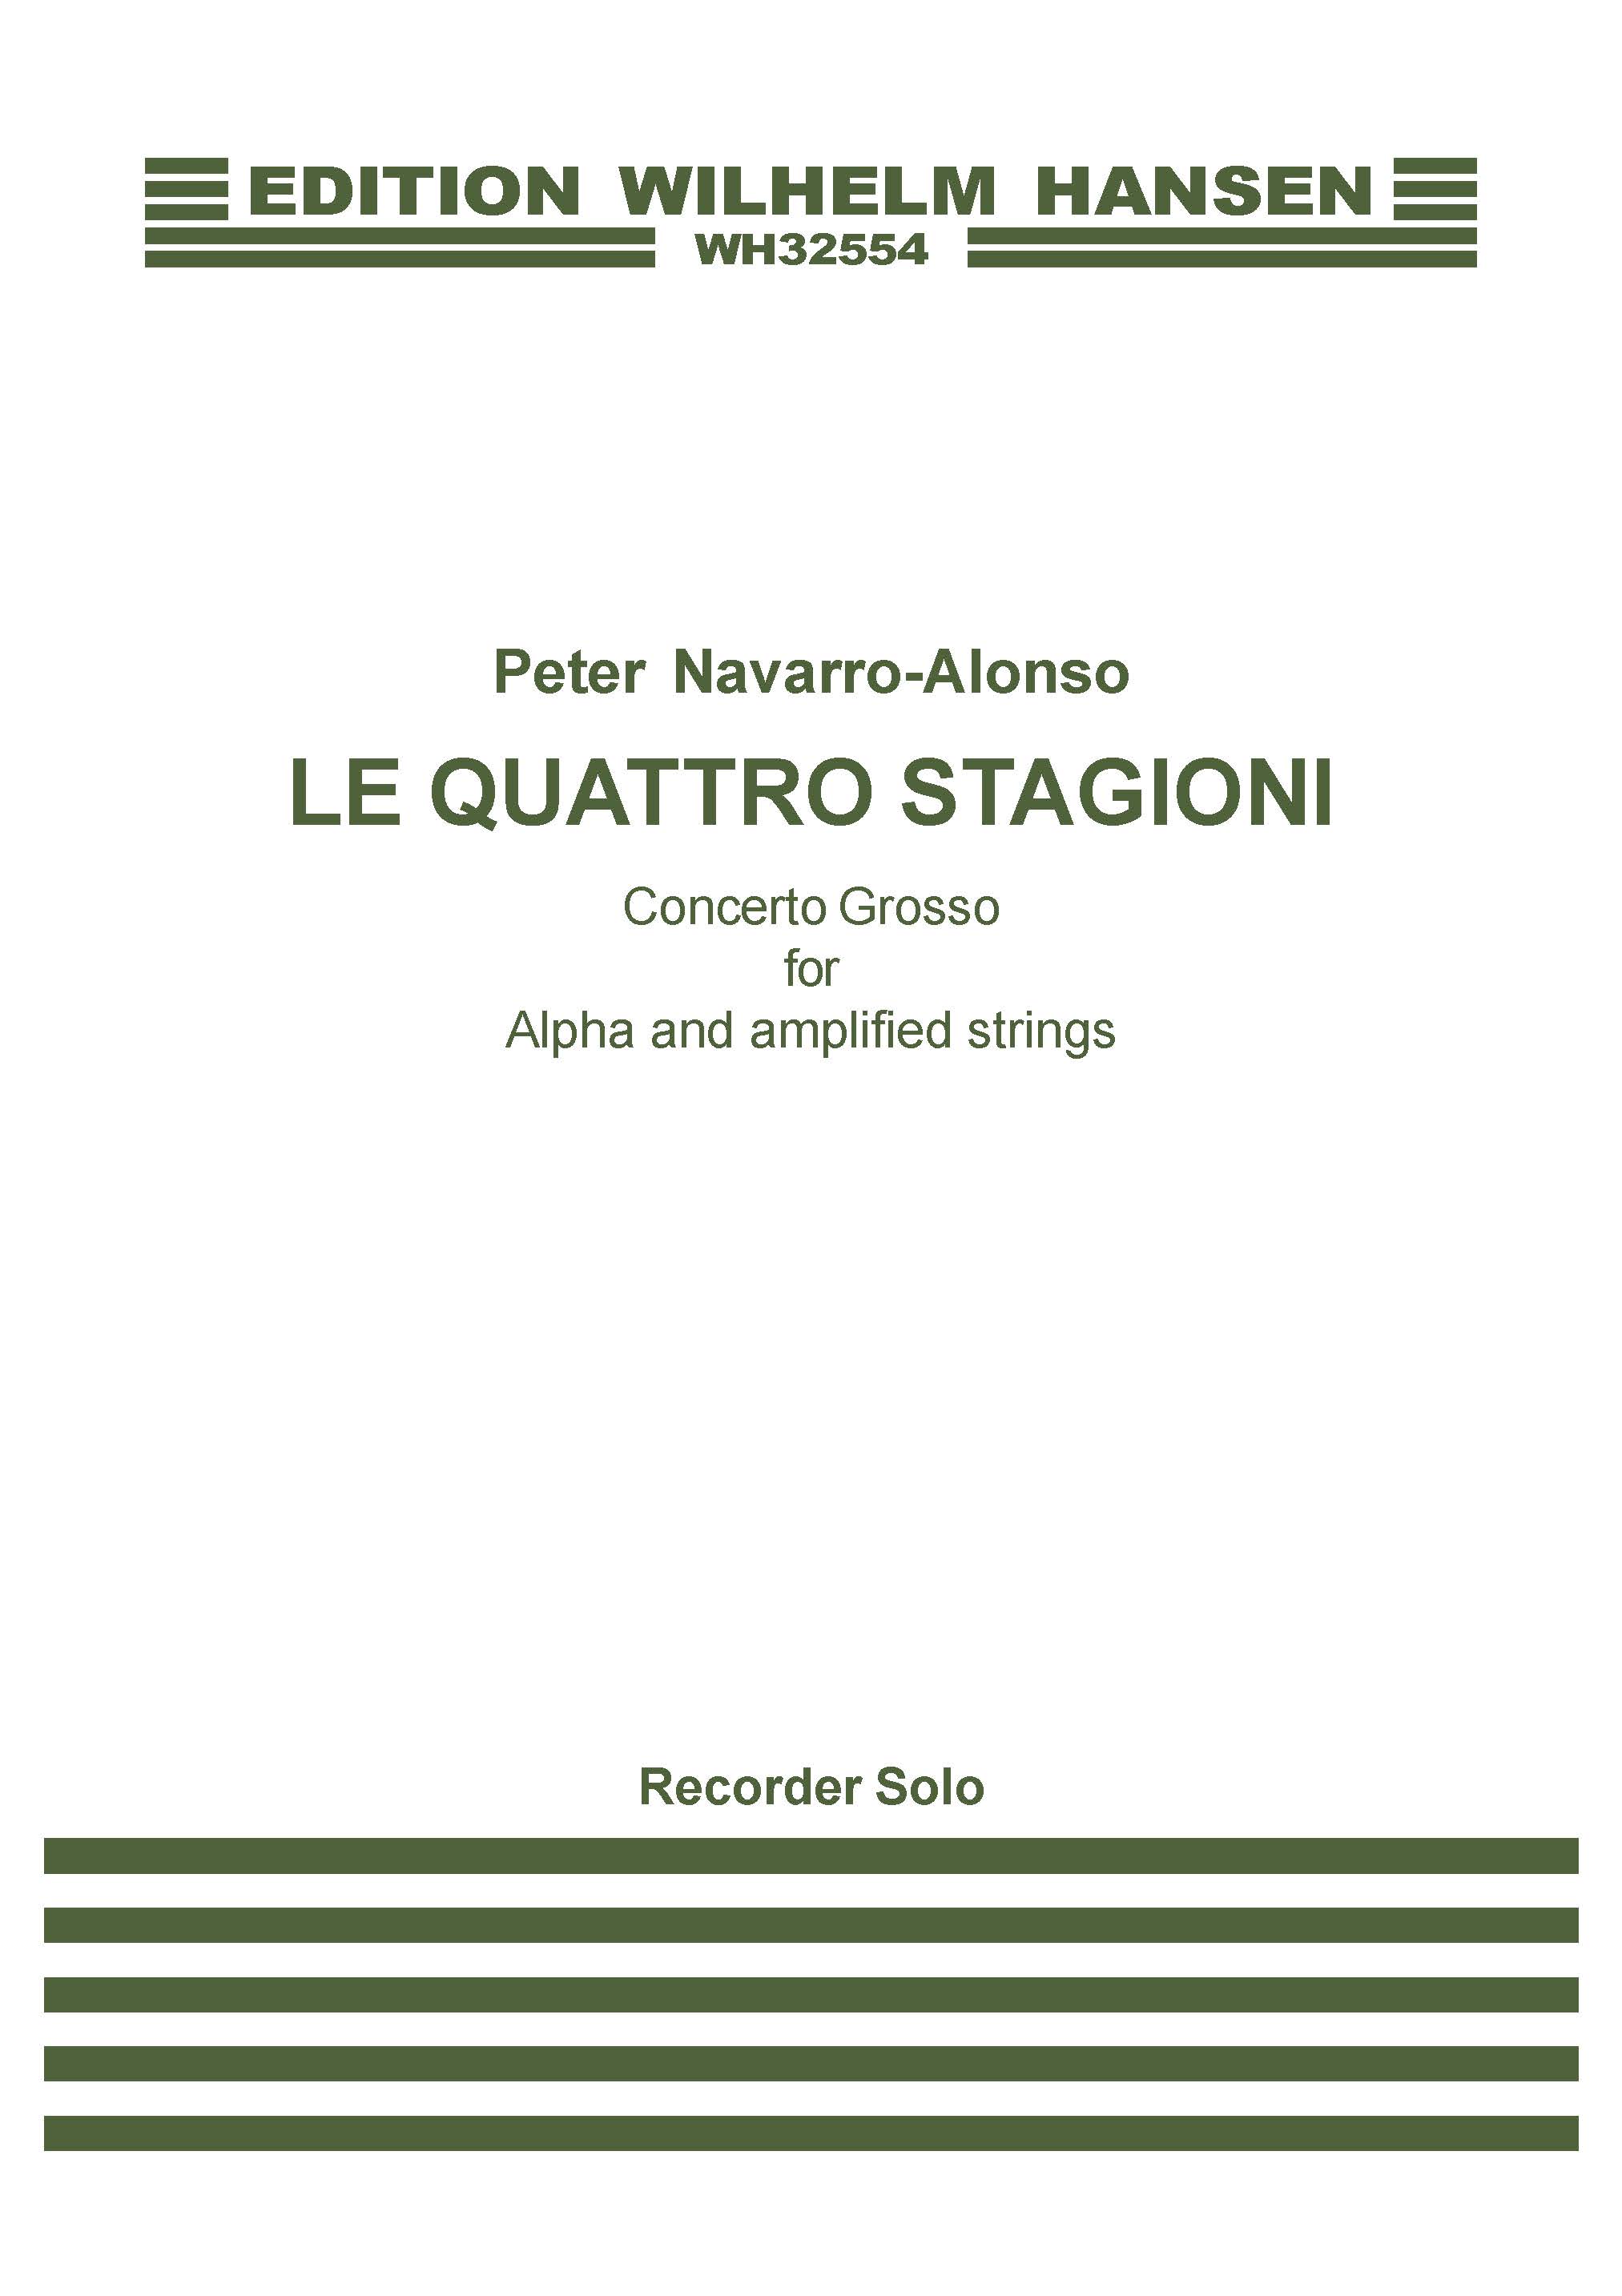 Peter Navarro-Alonso: Le Quattro Stagioni: Descant Recorder: Part